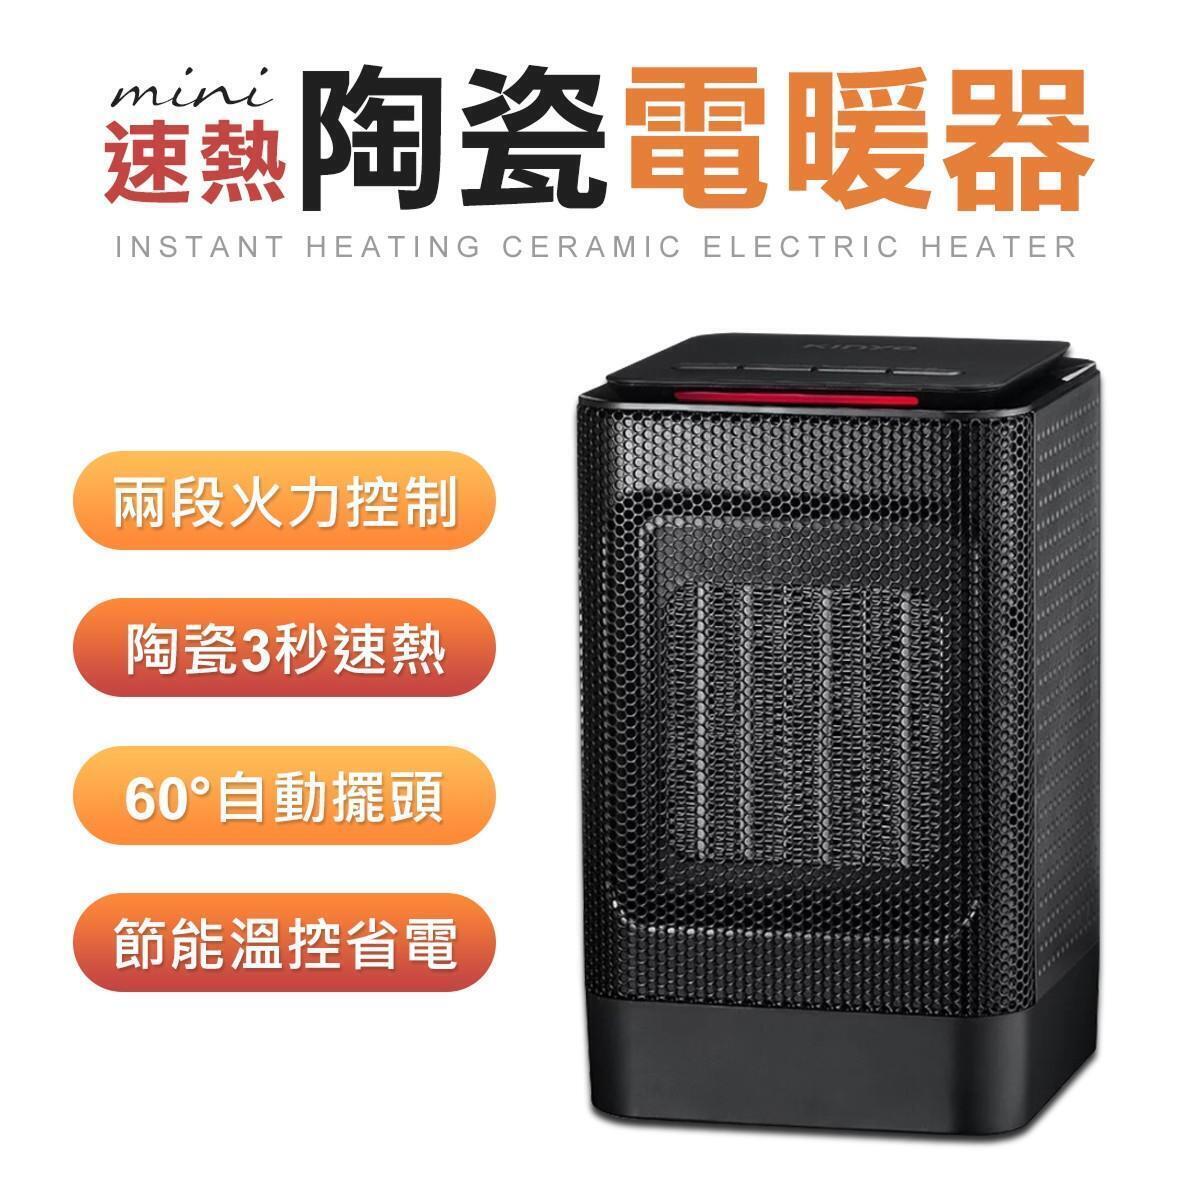 一年保固 速熱陶瓷電暖器 左右擺頭 電暖器 暖風機 暖氣機 電暖爐 擺頭電暖器 露營 電暖扇